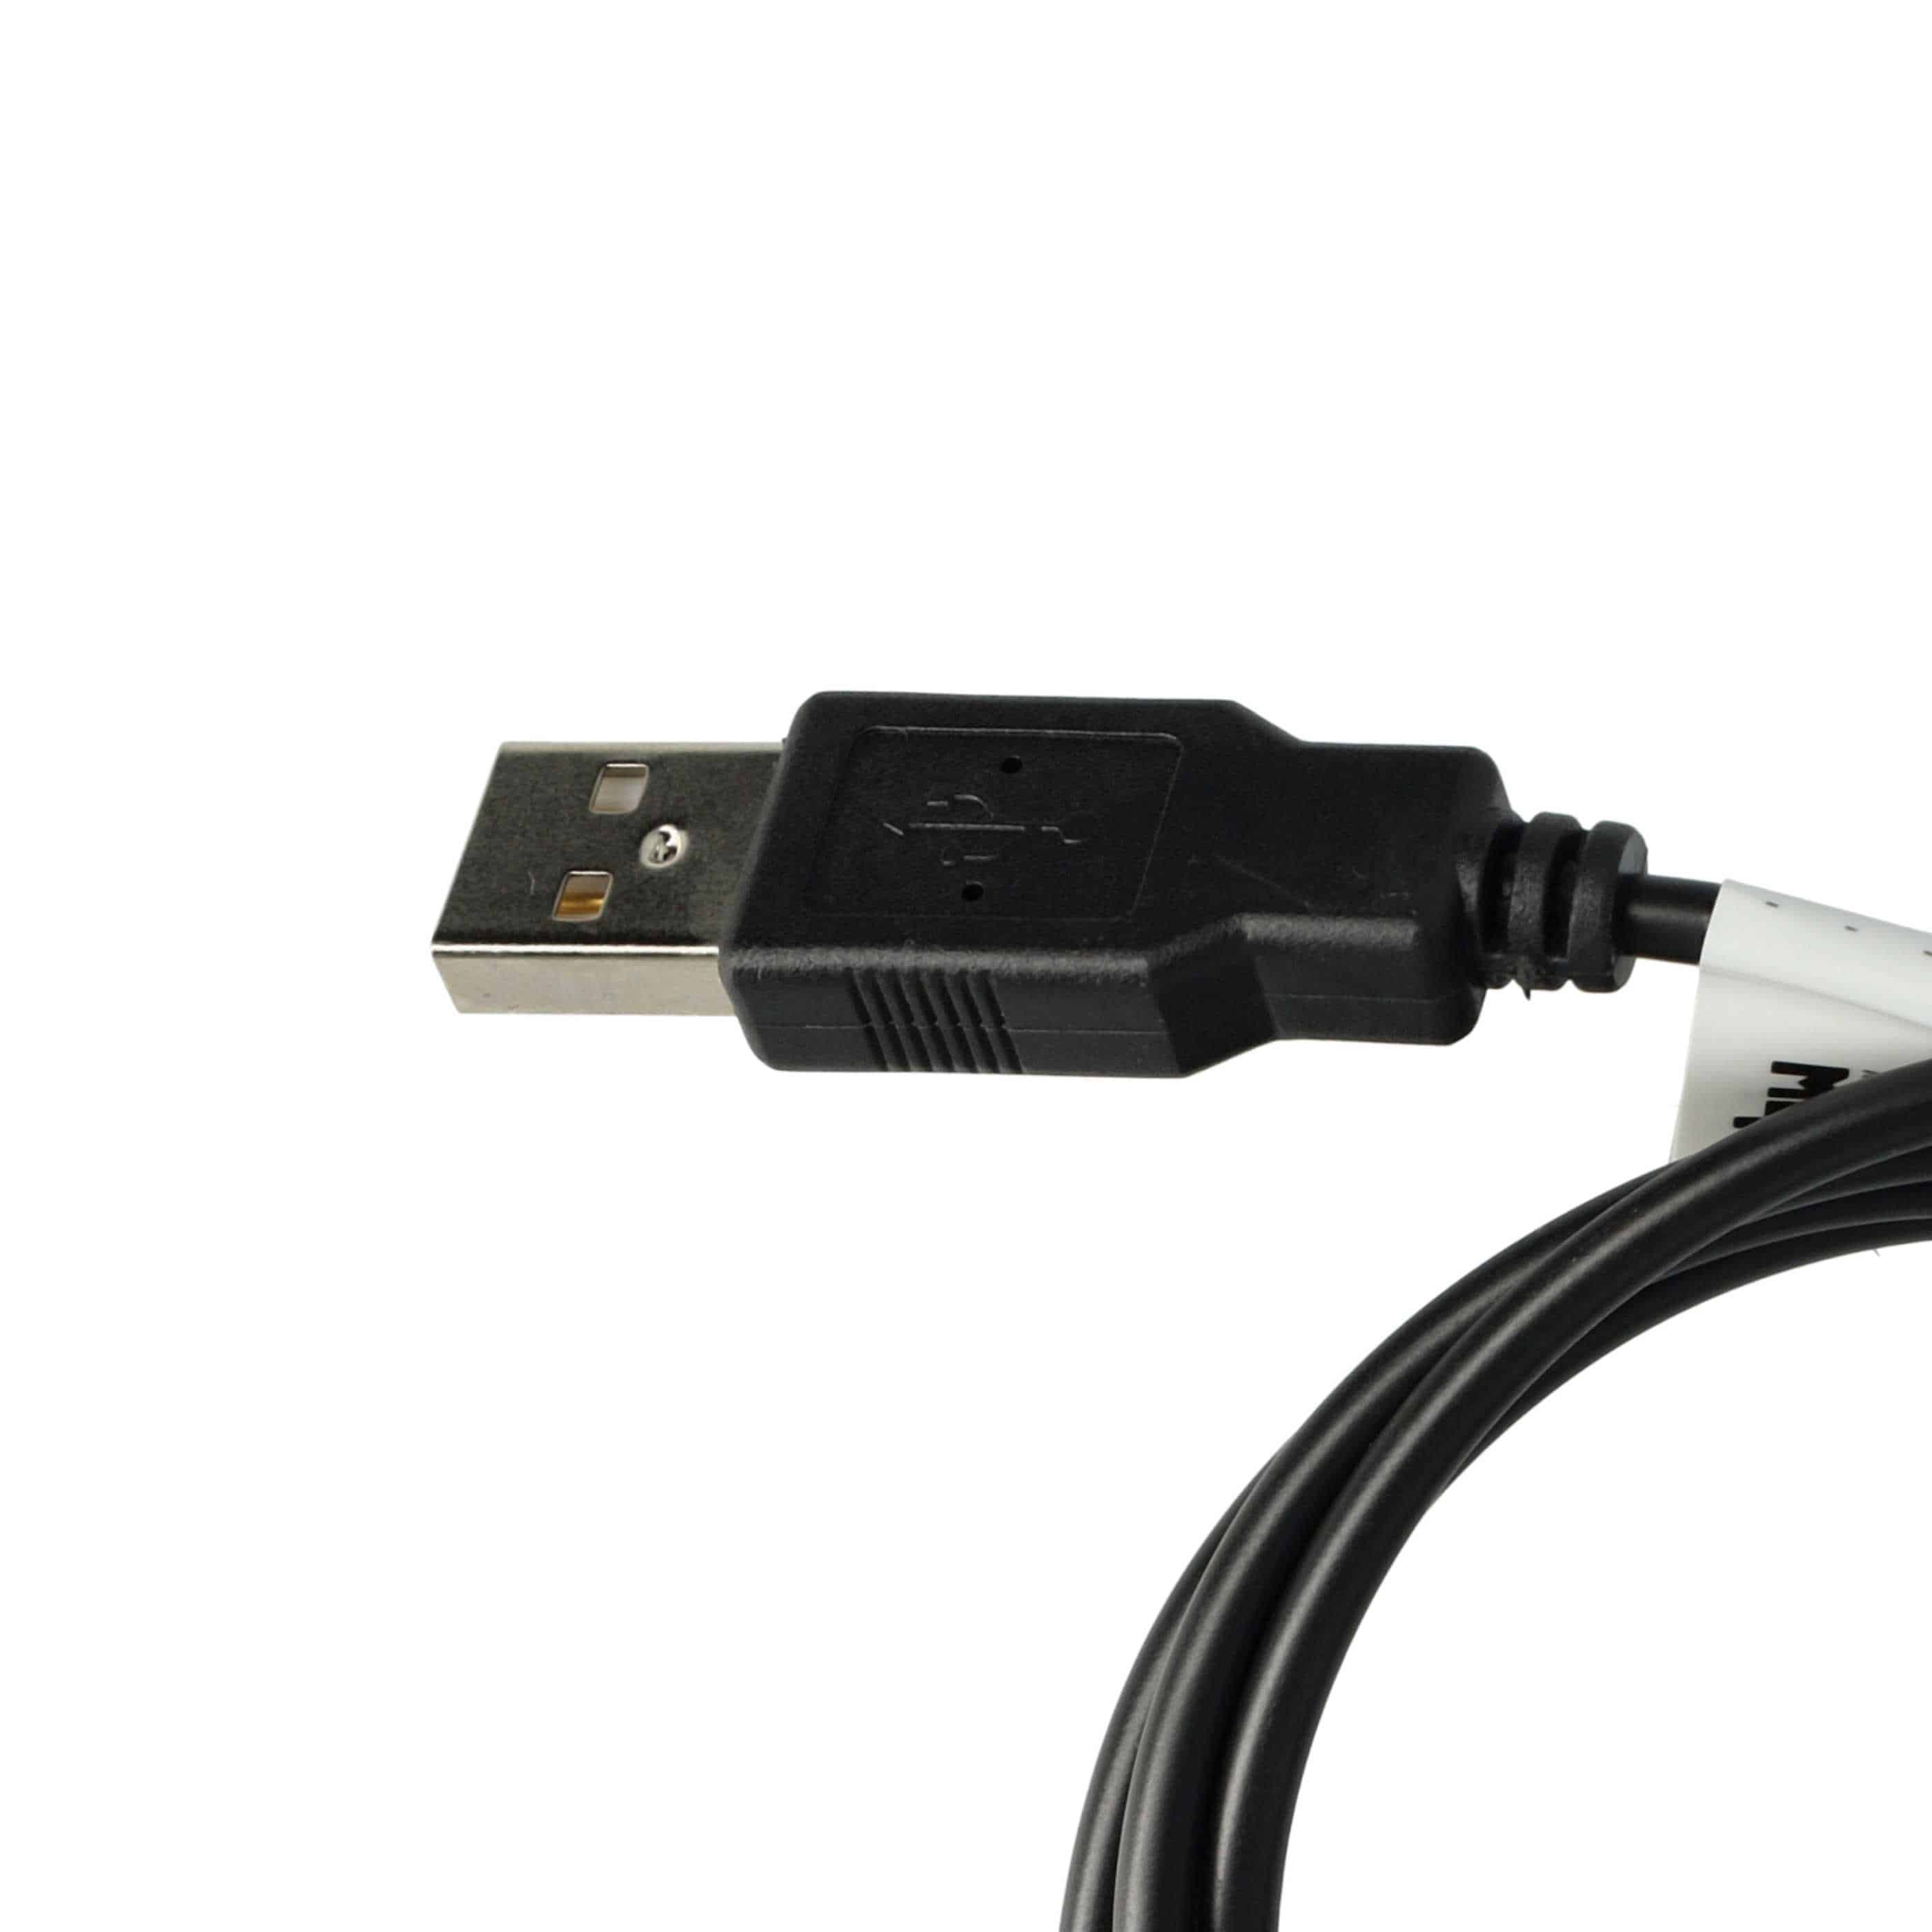 USB Datenkabel 2-in-1 Ladekabel passend für Mustek GPS Navi u.a.